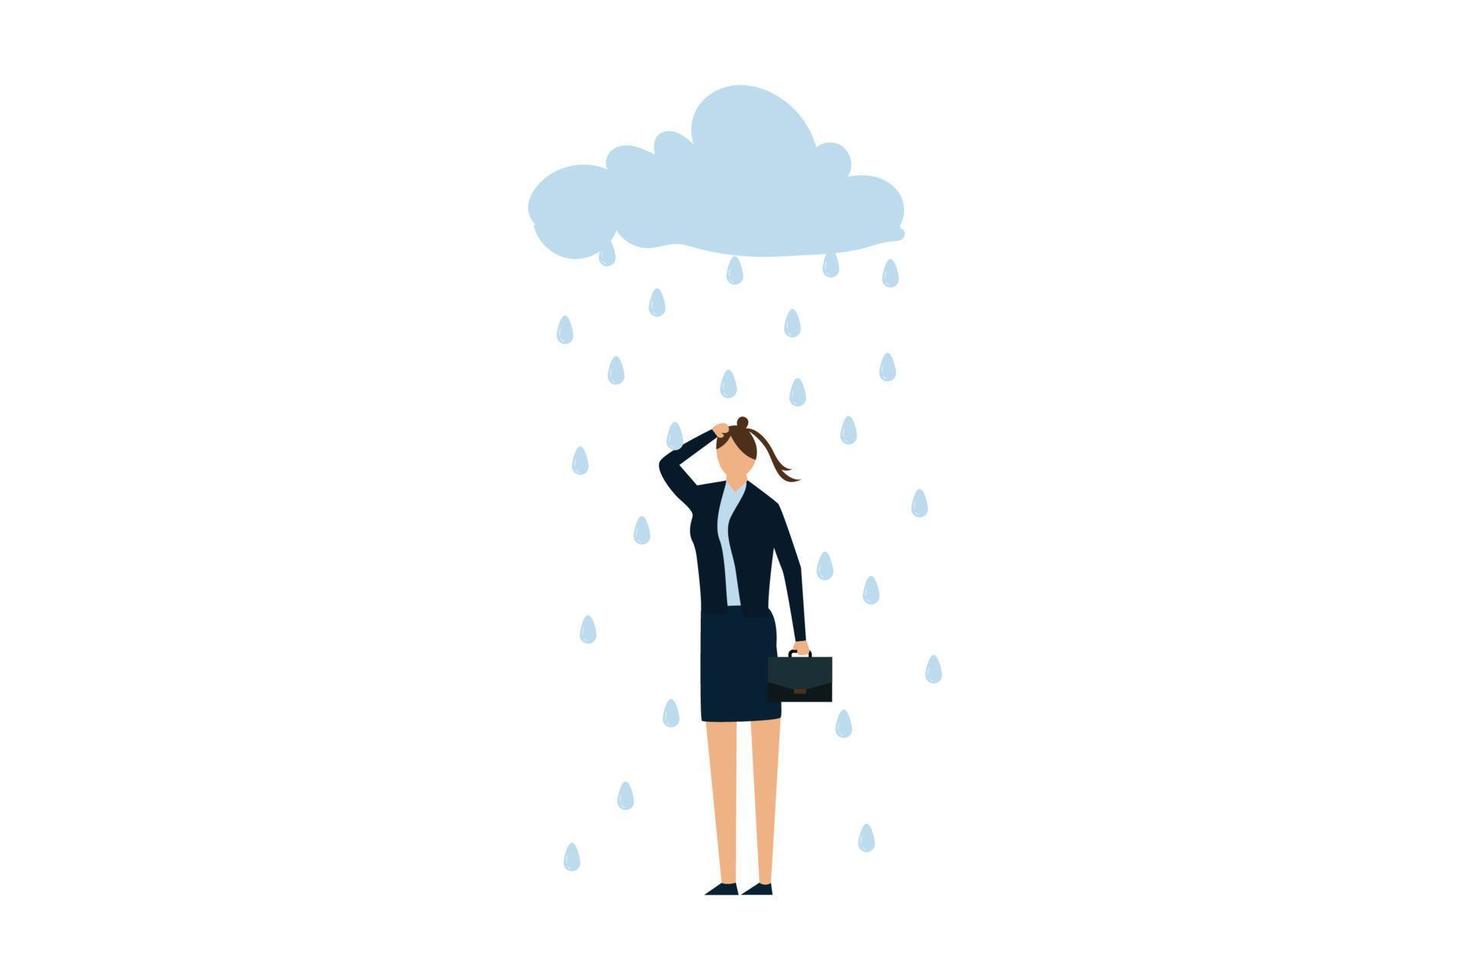 carga de trabajo y estrés que causan depresión en el trabajador de oficina, tristeza deprimida jovencita en uniforme de oficina con nube y lluvia metáfora de problemas mentales. vector